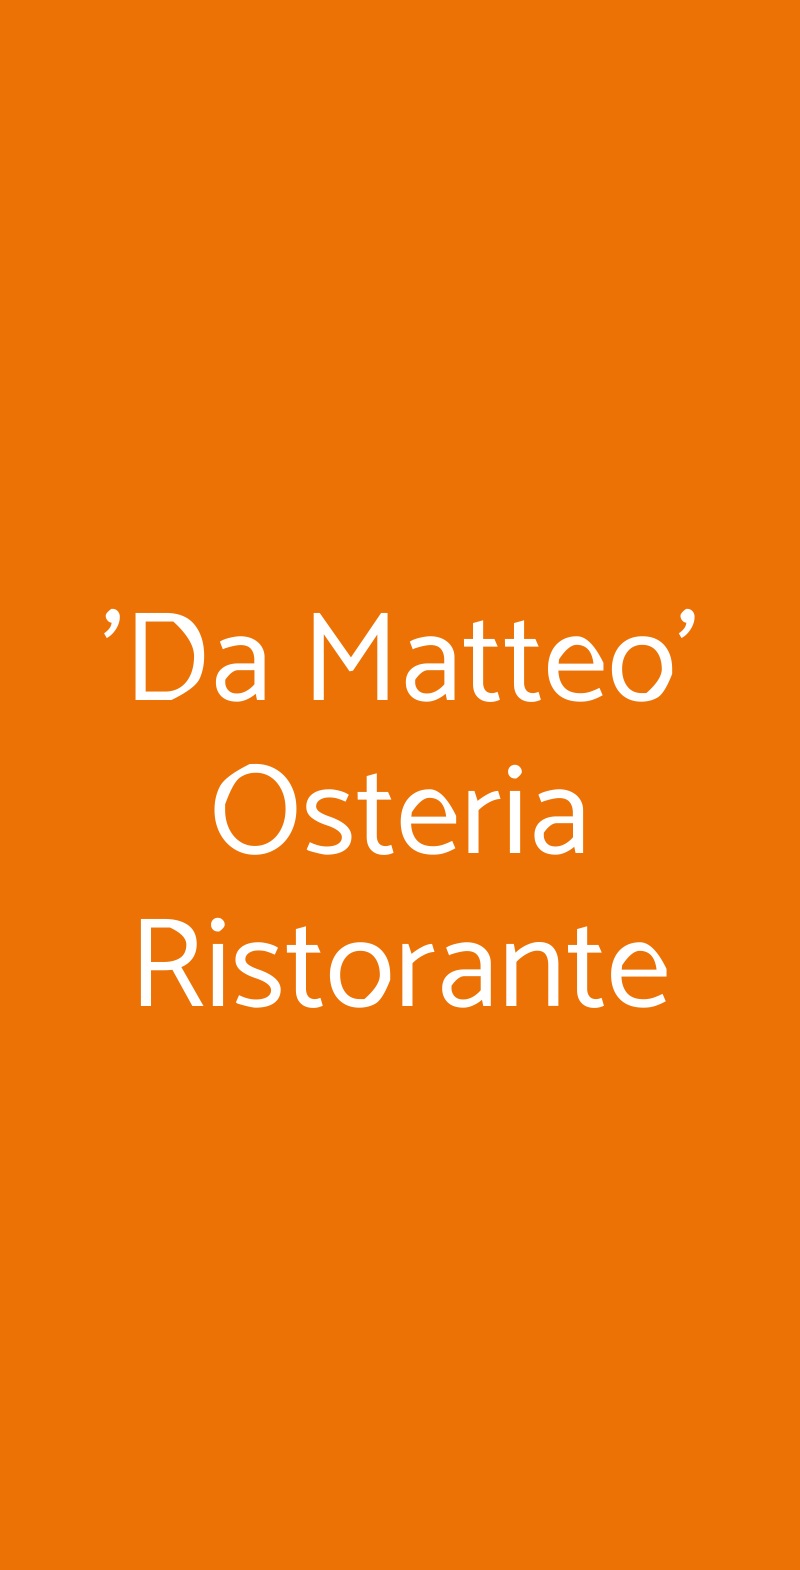 'Da Matteo' Osteria Ristorante Montemaggiore al Metauro menù 1 pagina